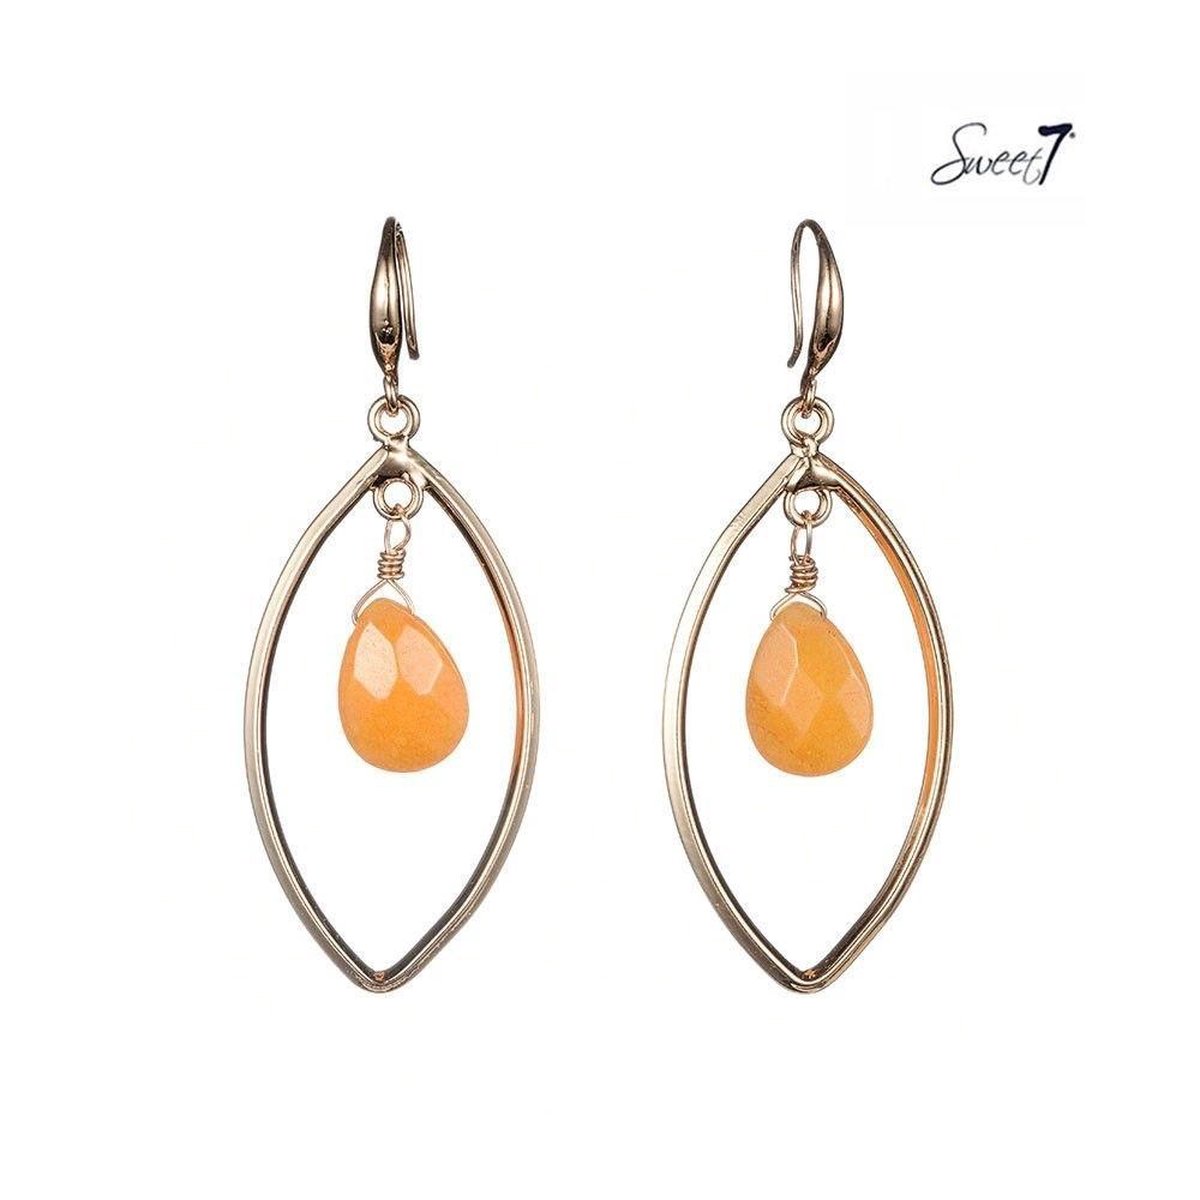 Goudkleurige ovale oorbellen met in de hanger een oranje facet glaskraal